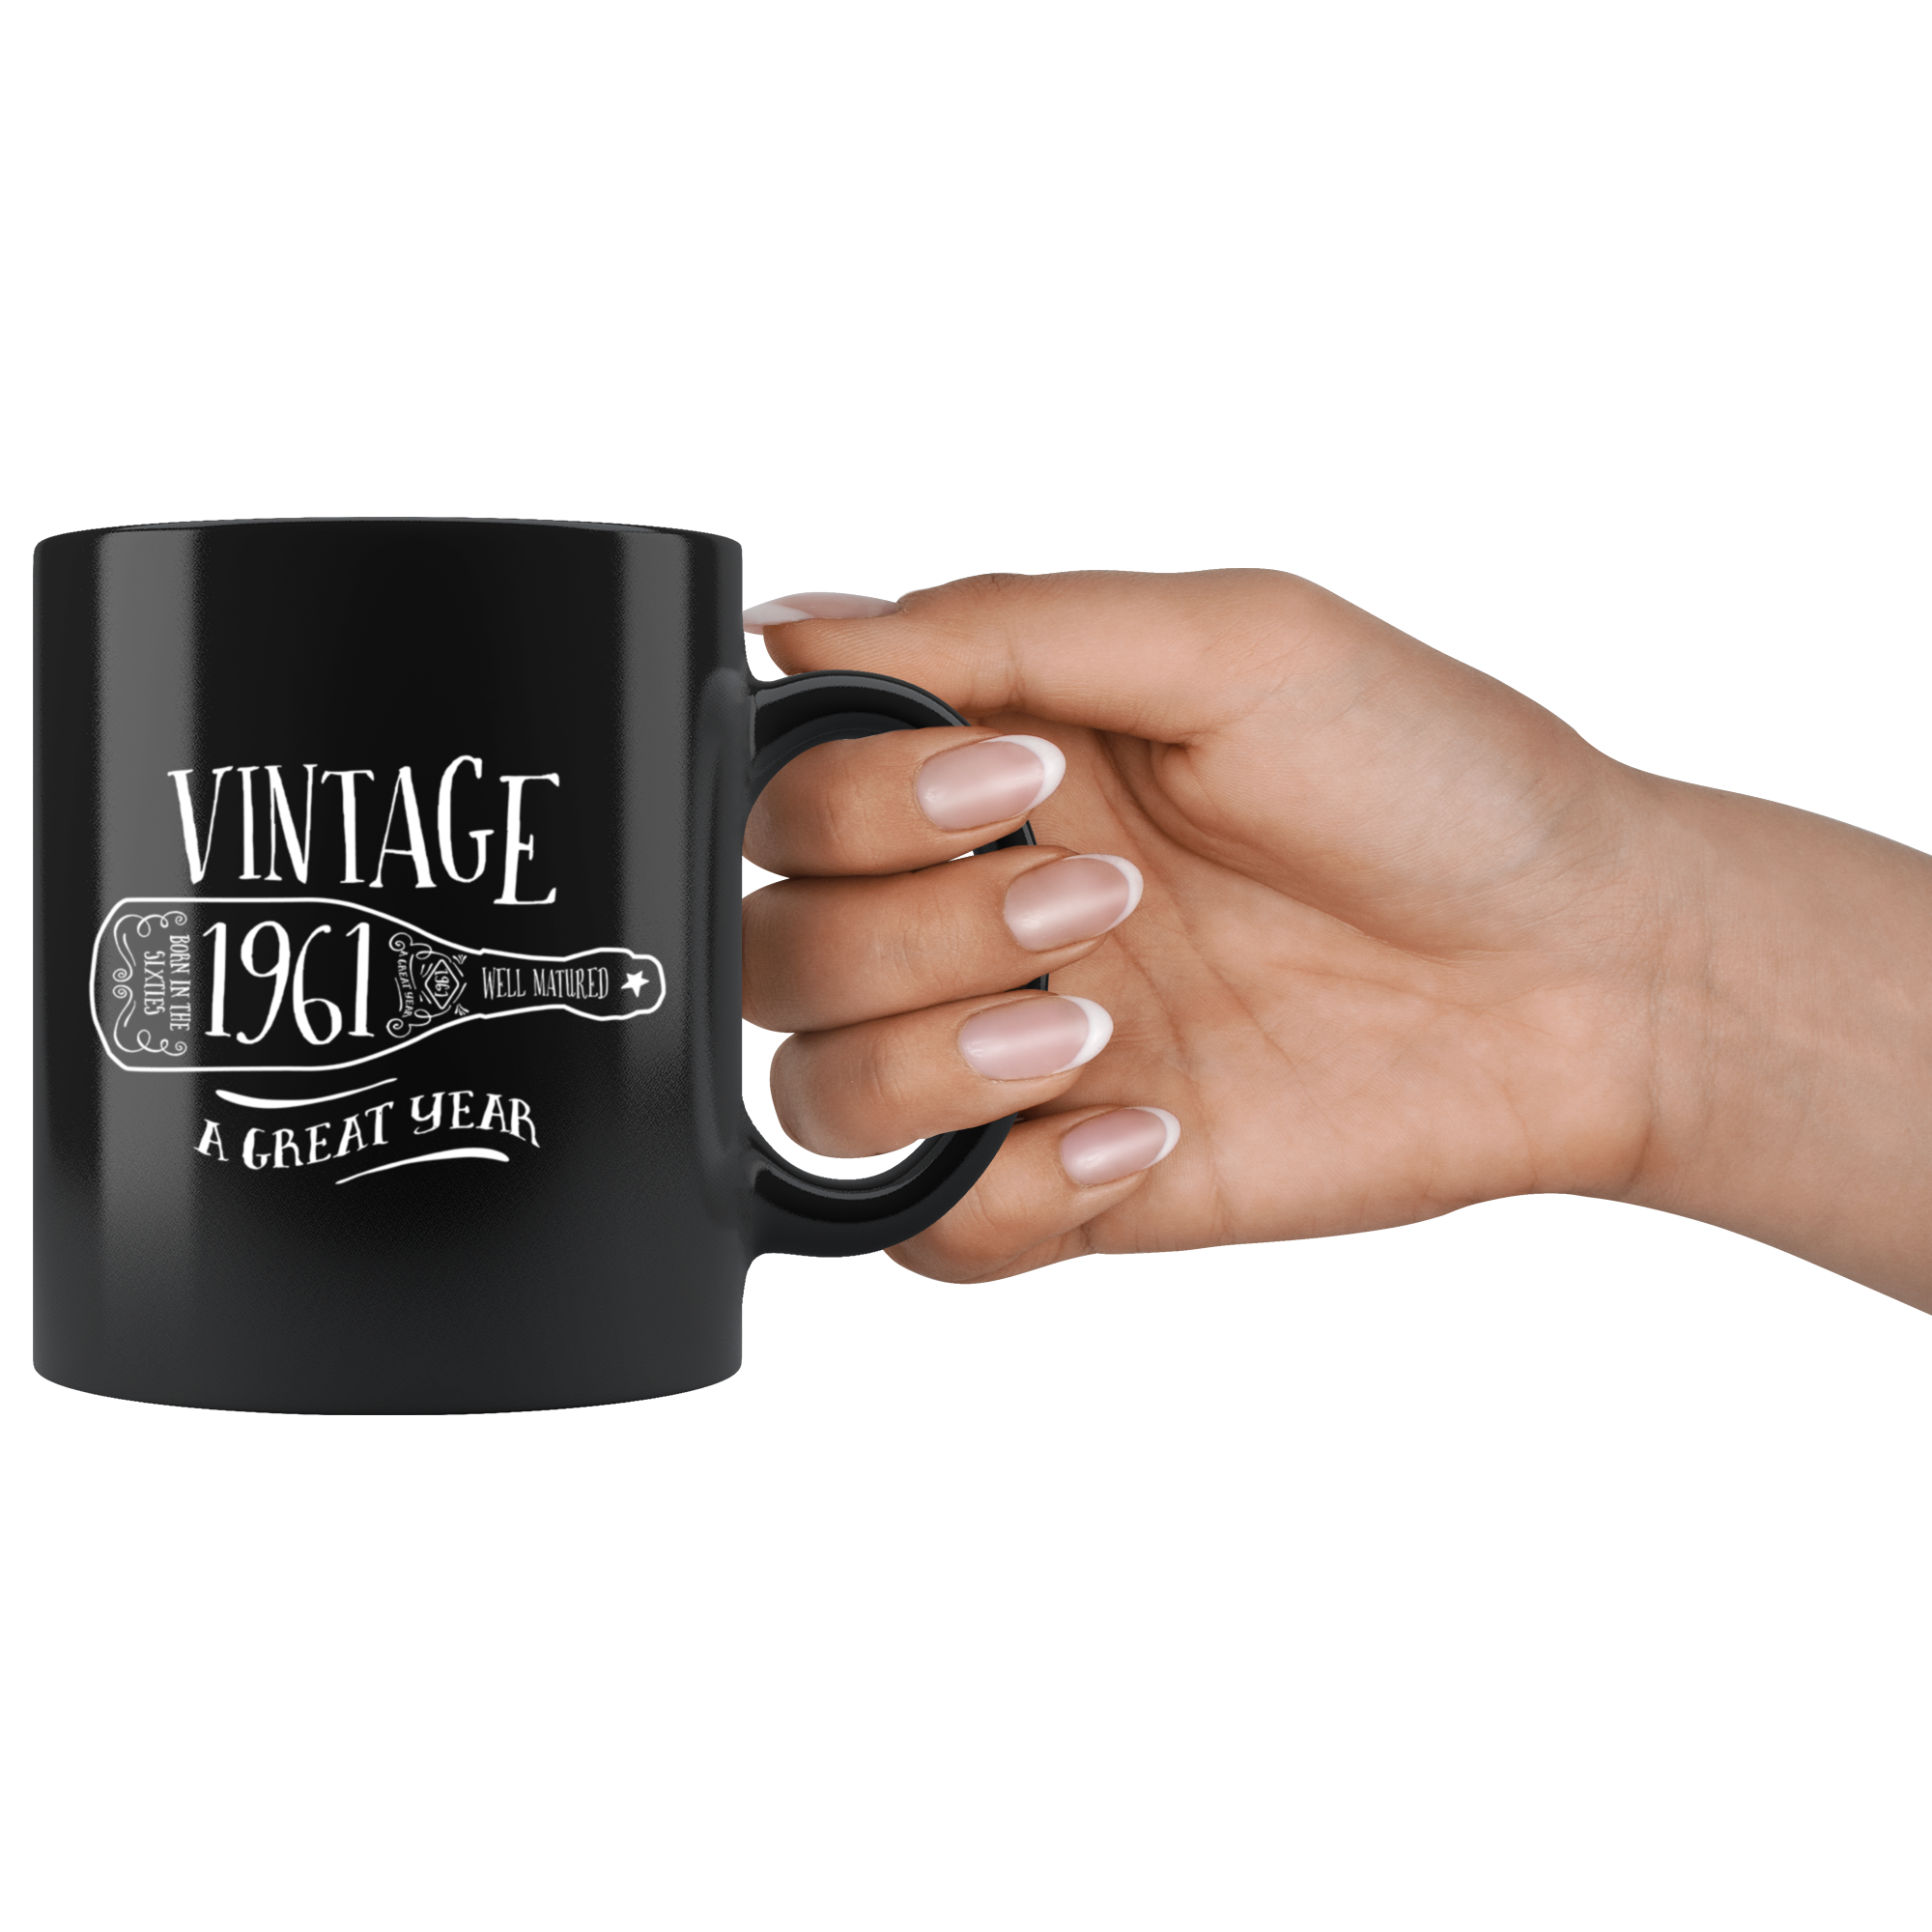 Vintage 1961 - Black Mug